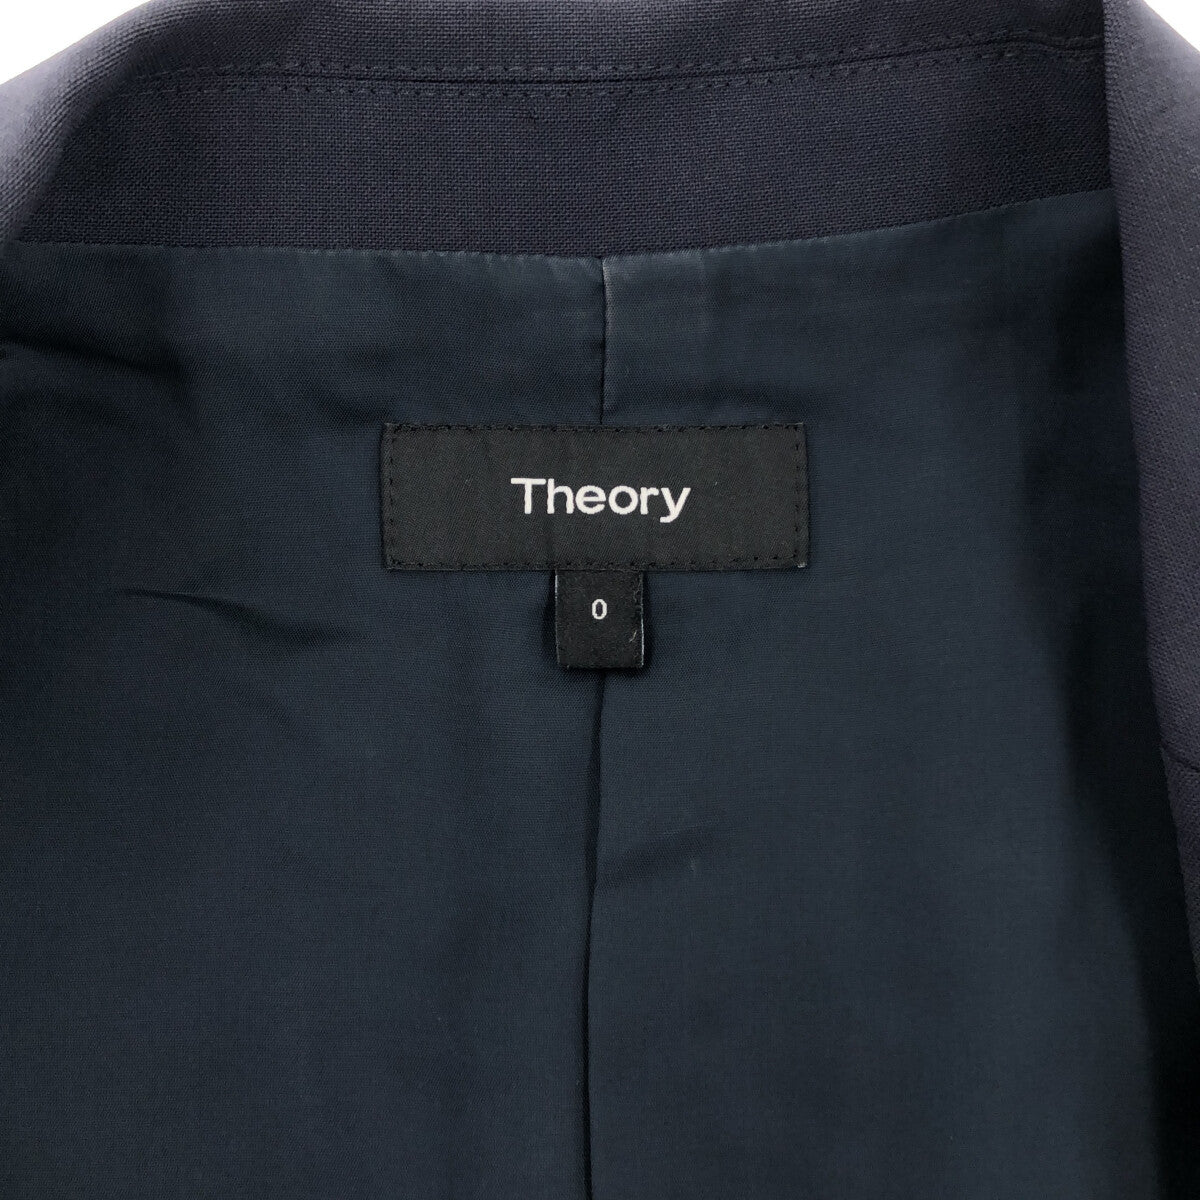 theory / セオリー | Tailor Gabe N / 総裏地 1B テーラードジャケット 